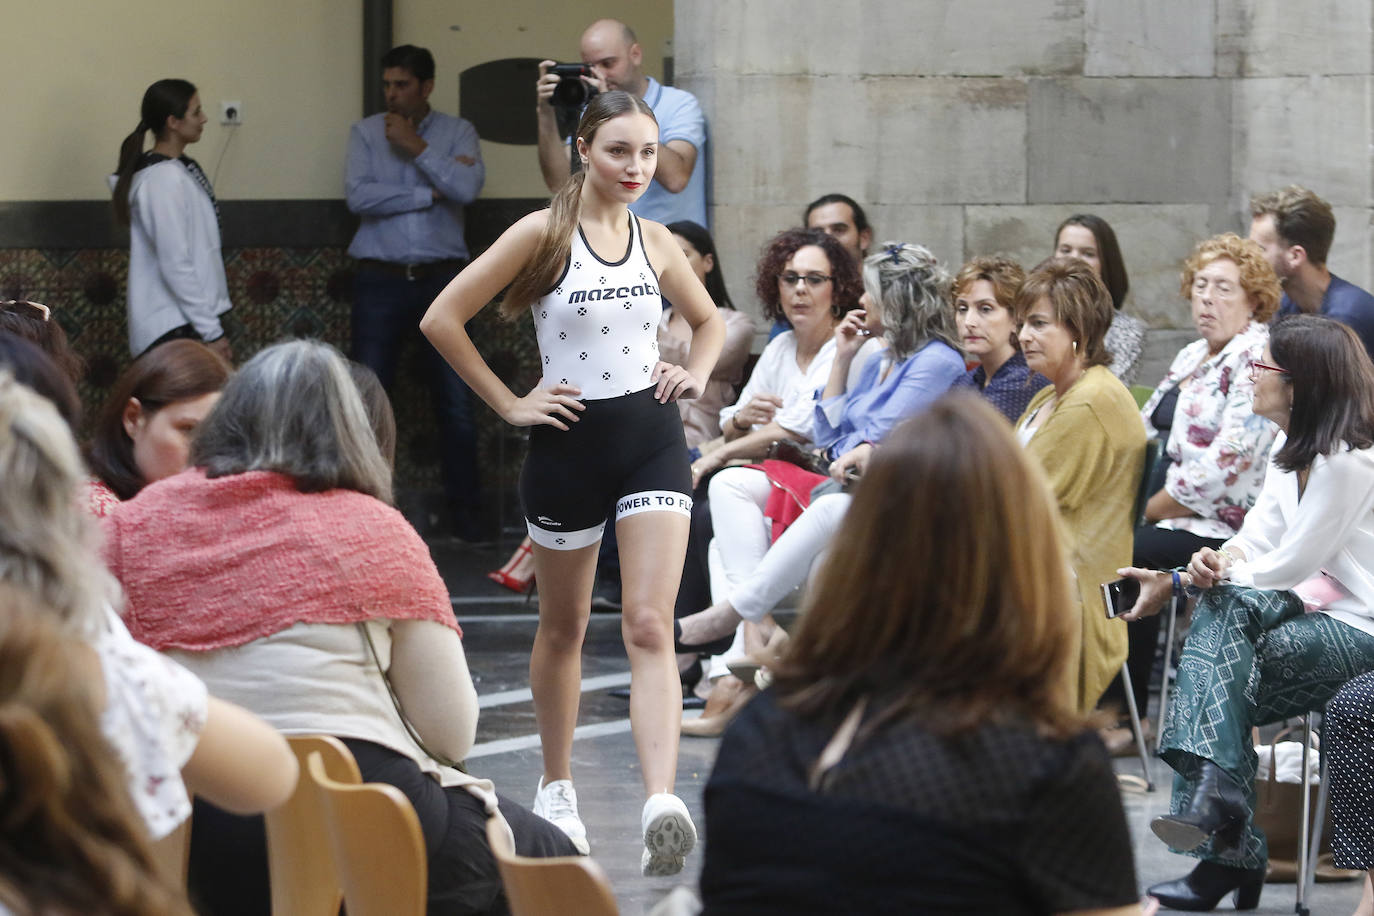 La primera Pasarela de Moda de Asturias, en la que numerosos diseñadores de la región han dado muestra de su creatividad y potencial, ha congregado a un gran número de expertos y aficionados en el Centro de Cultura Antiguo Instituto de Gijón. 